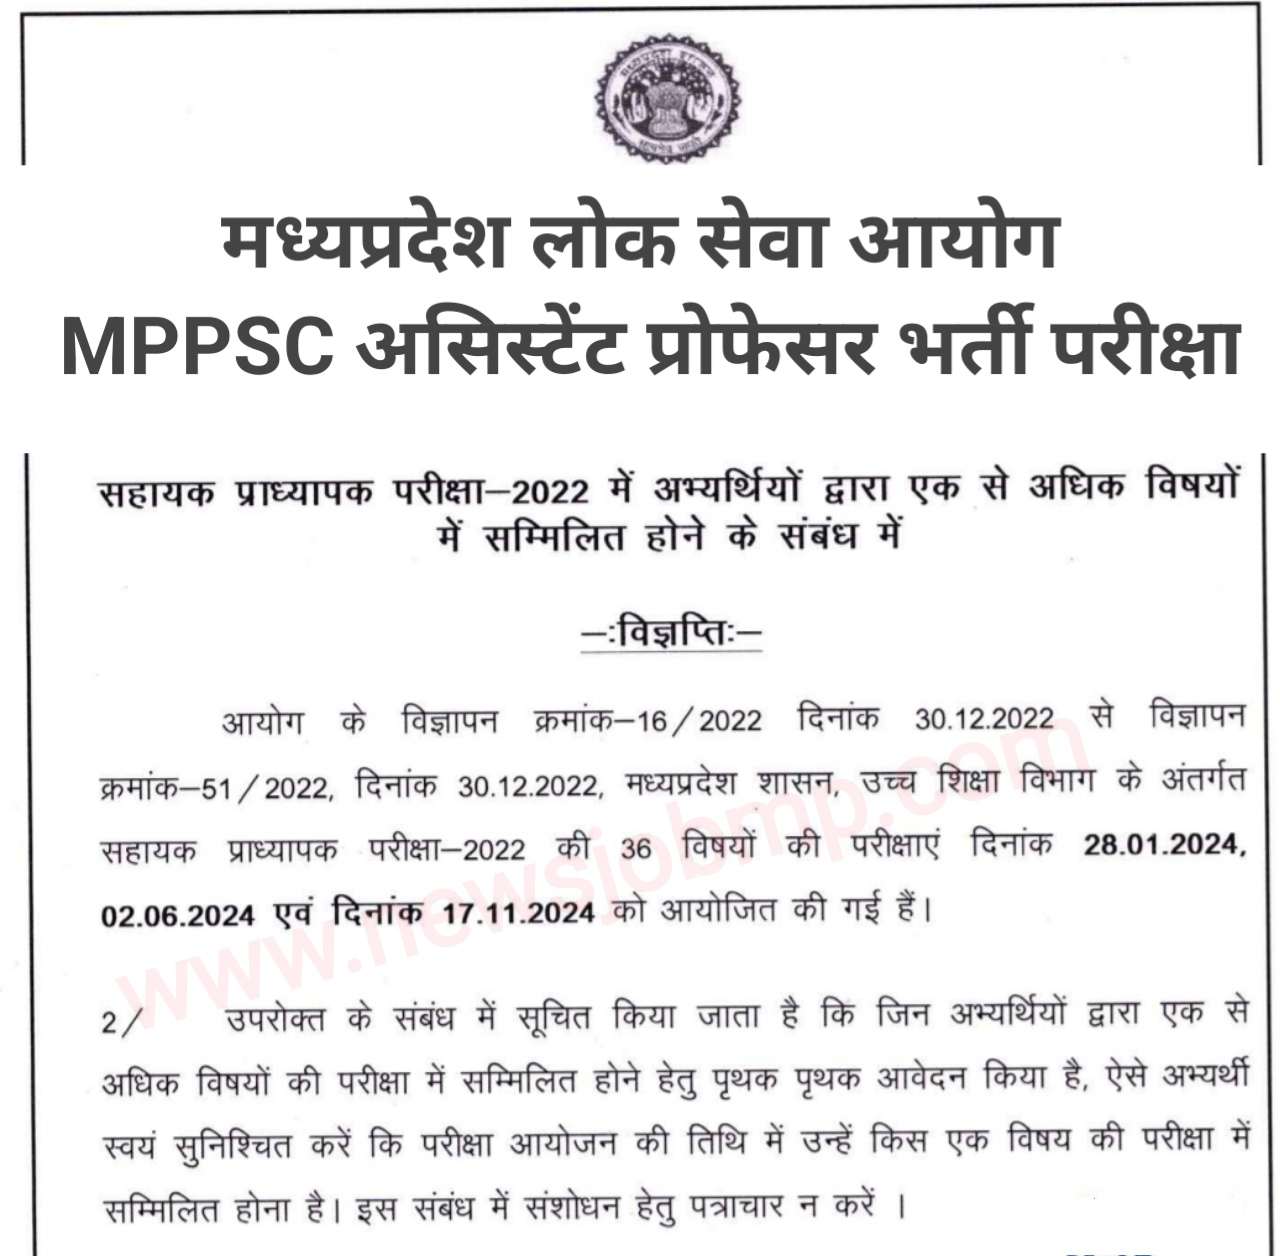 मध्यप्रदेश असिस्टेंट प्रोफेसर भर्ती परीक्षा के संबंध में नवीन सूचना जारी, MPPSC MP Assistant Professor Exam